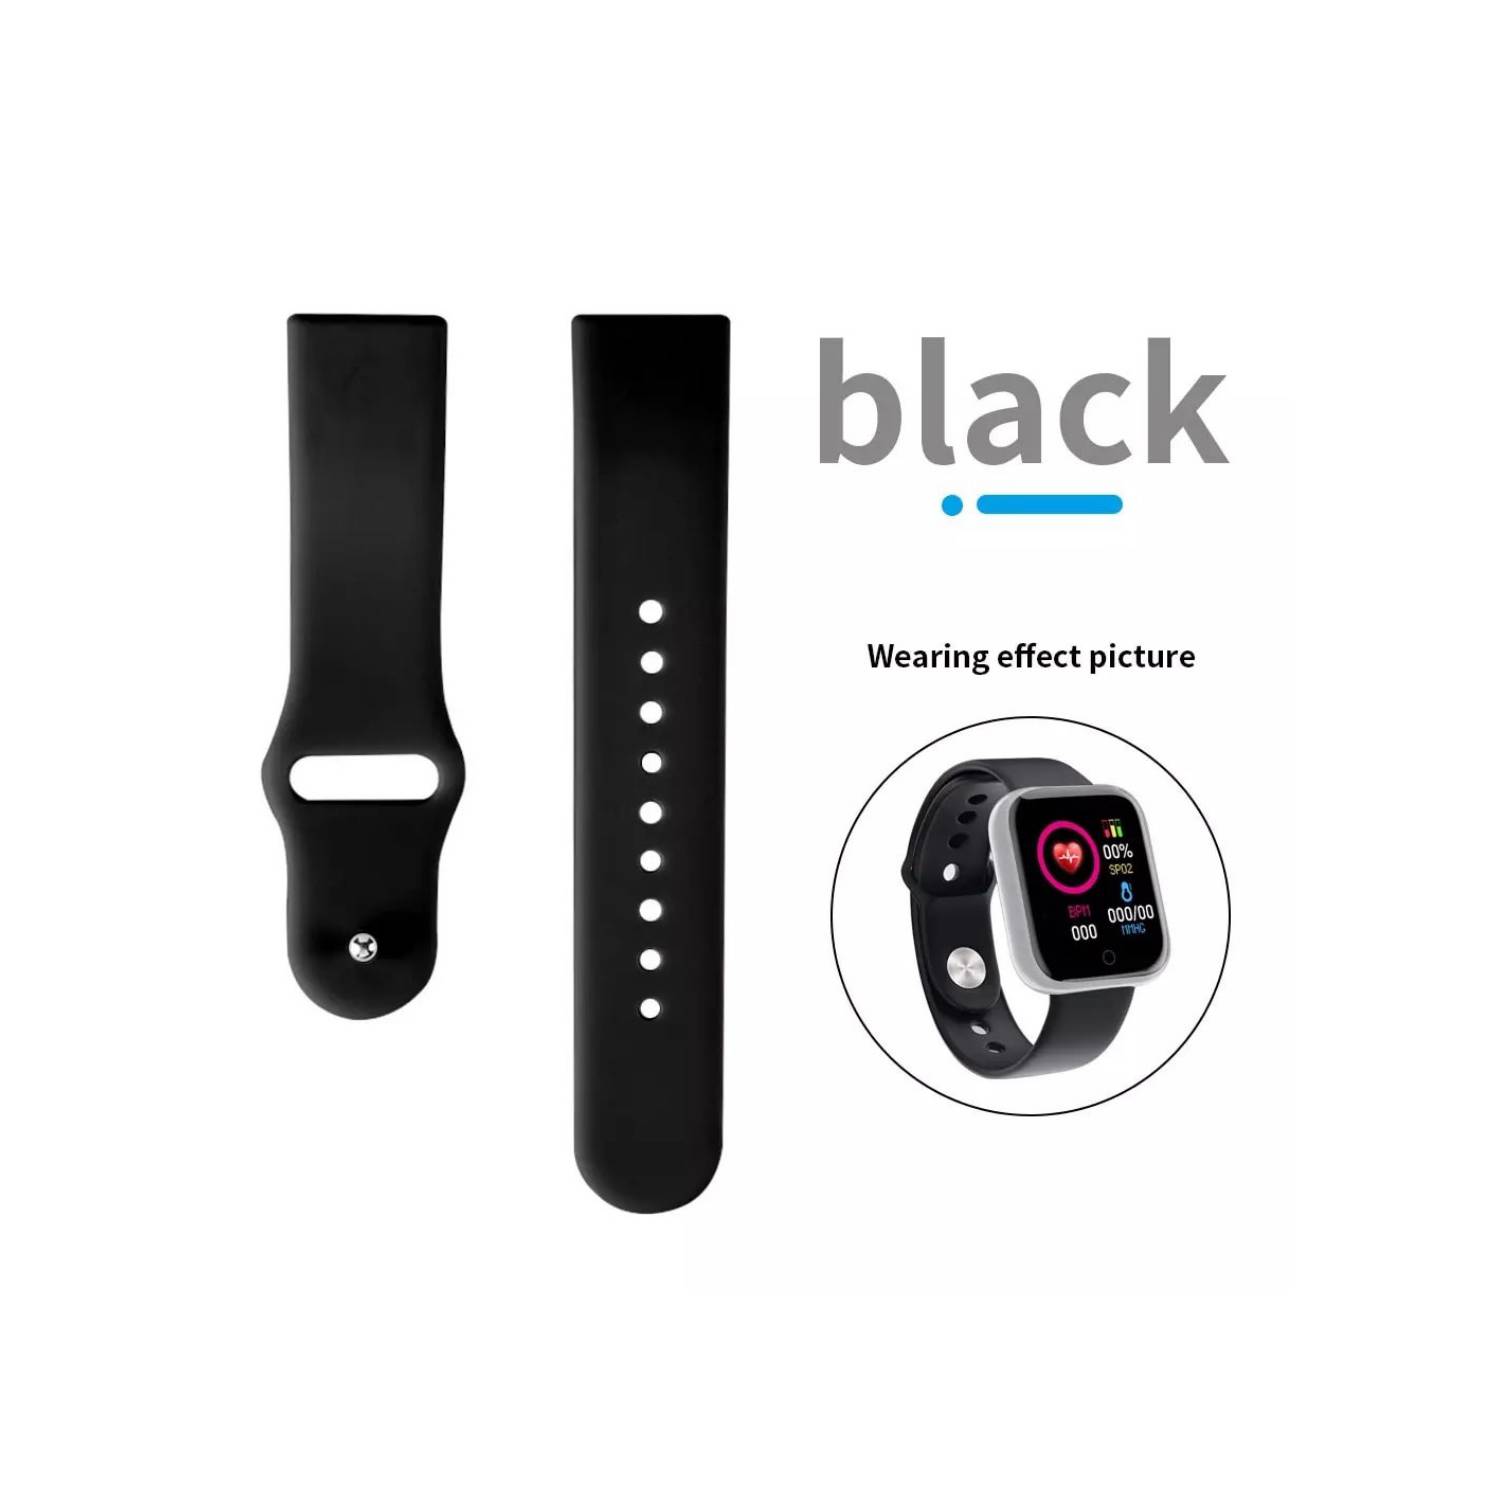 Correa plana vistosa 22mm color negro para smartwatch Genérico